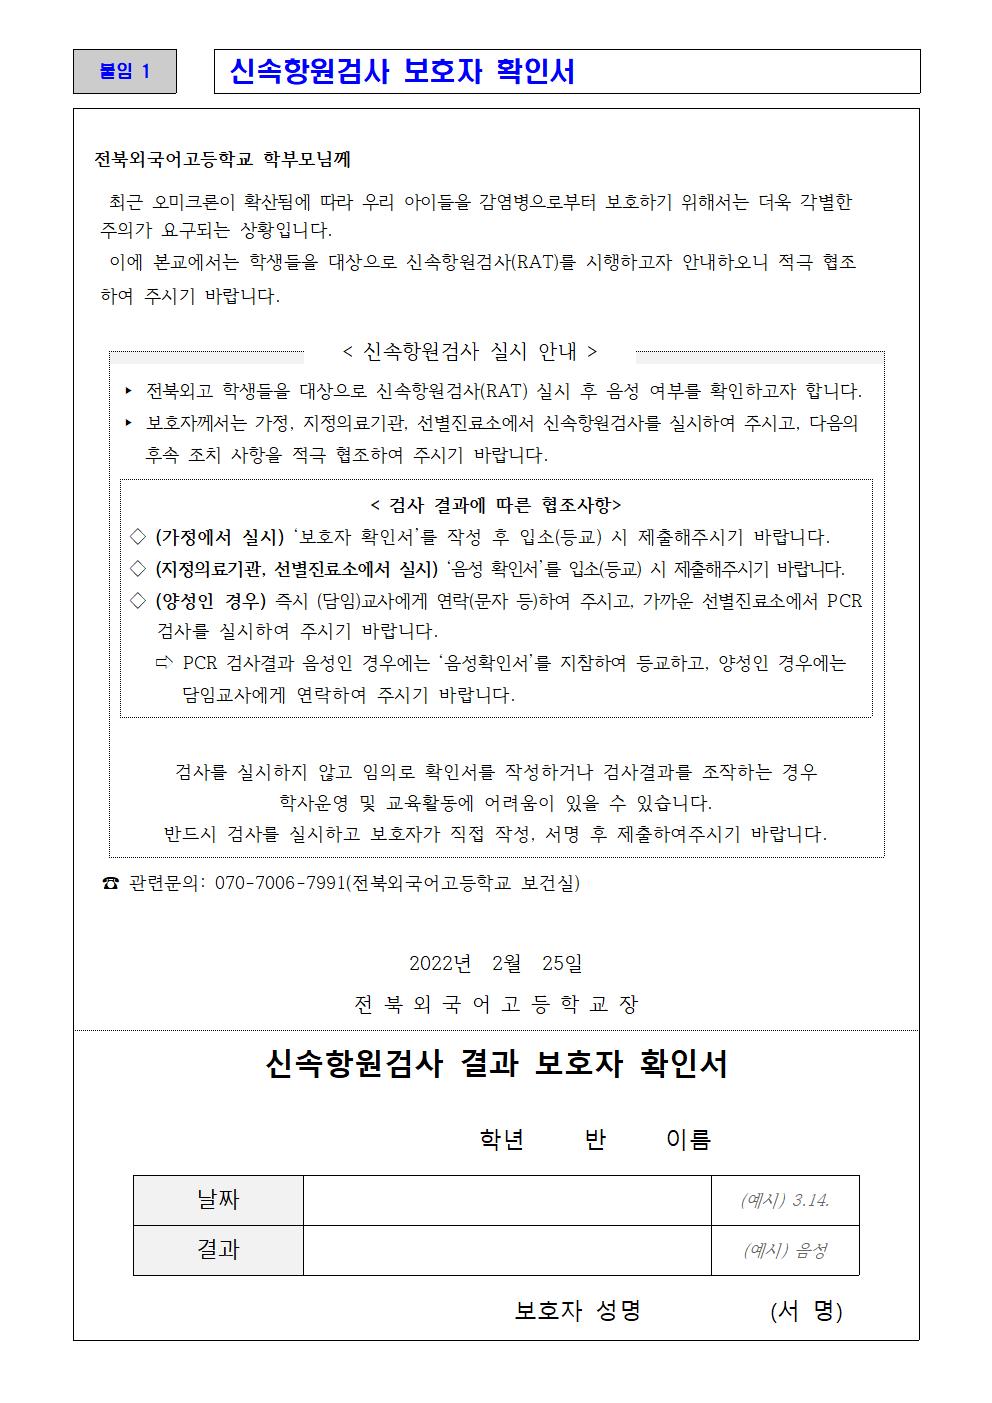 새학기 코로나19 예방관리 안내 가정통신문003 - 복사본